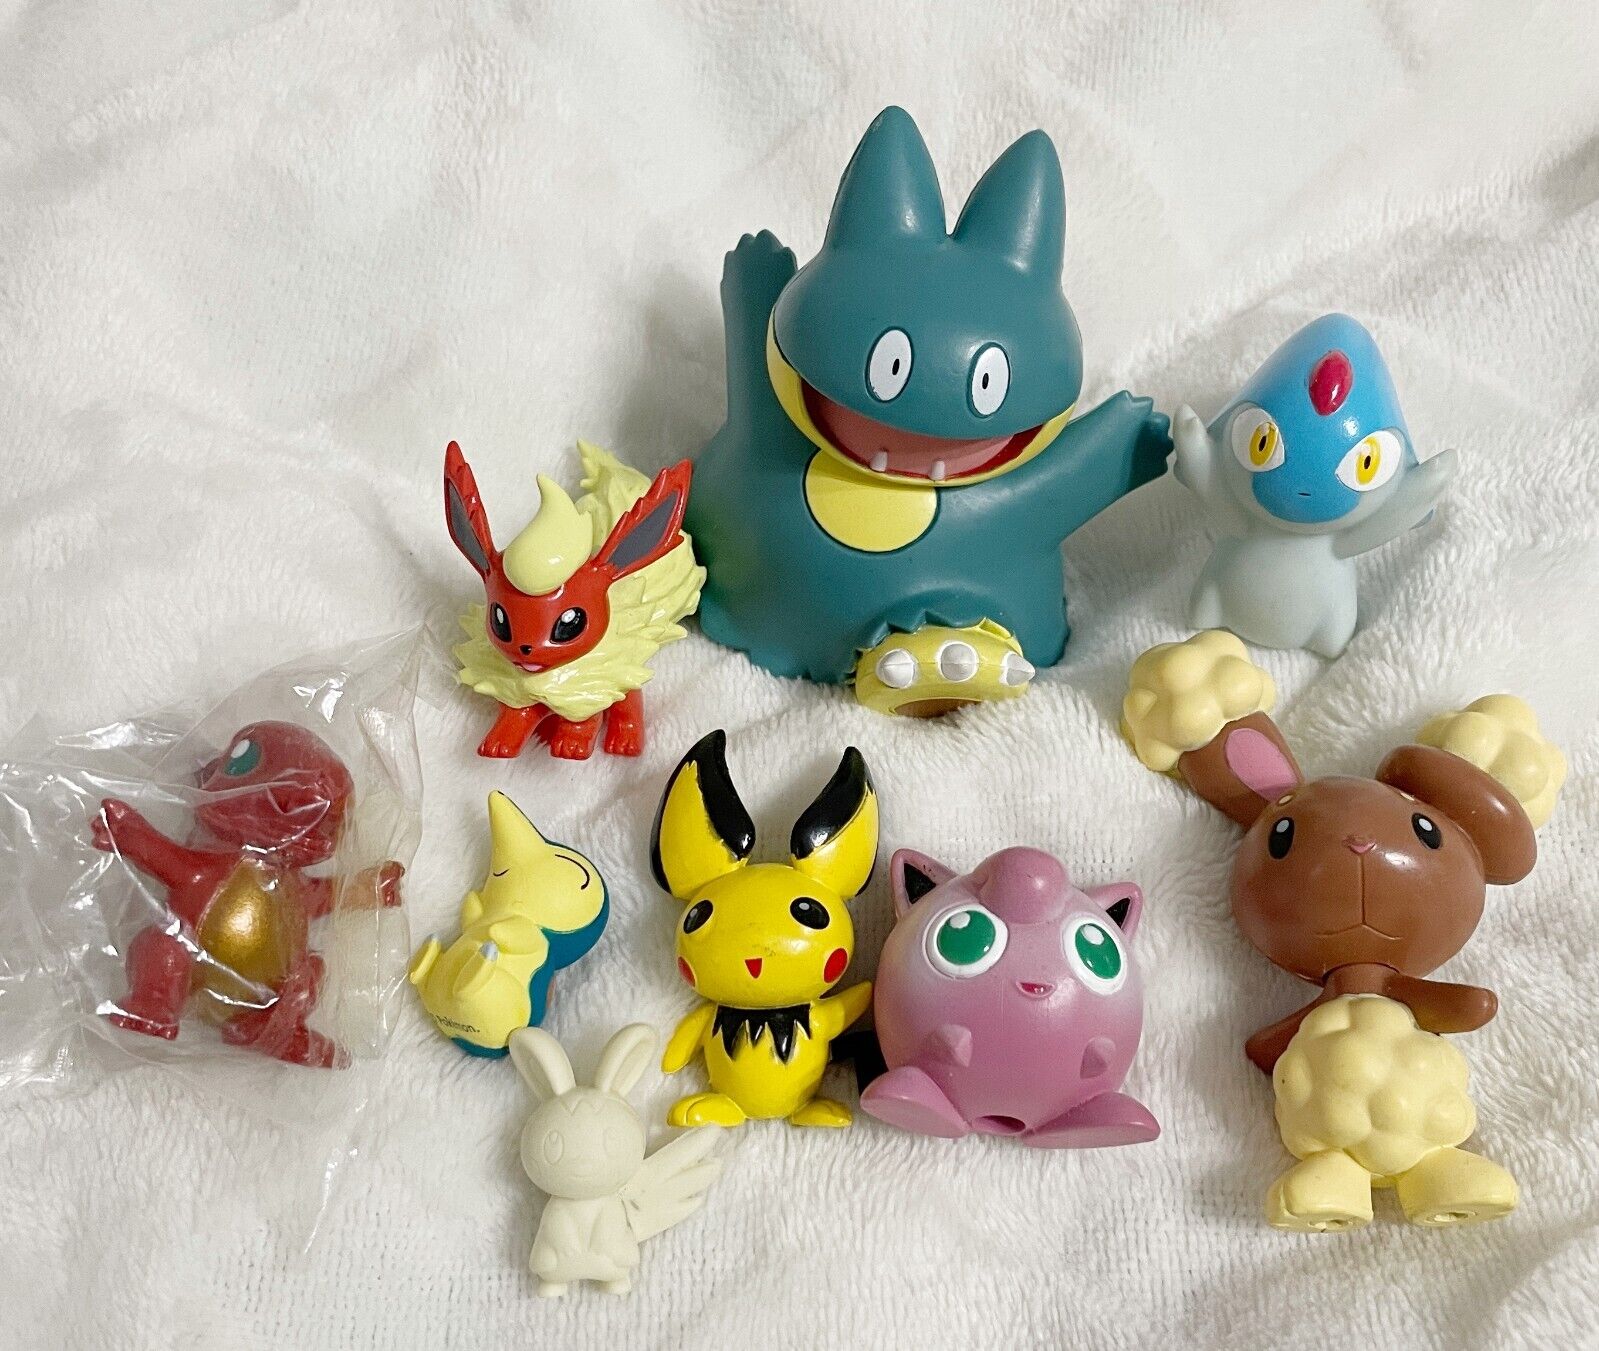 Nintendo and Jakks, Pokemon Pocket Monsters Lot of 9 PVC Mini Figure